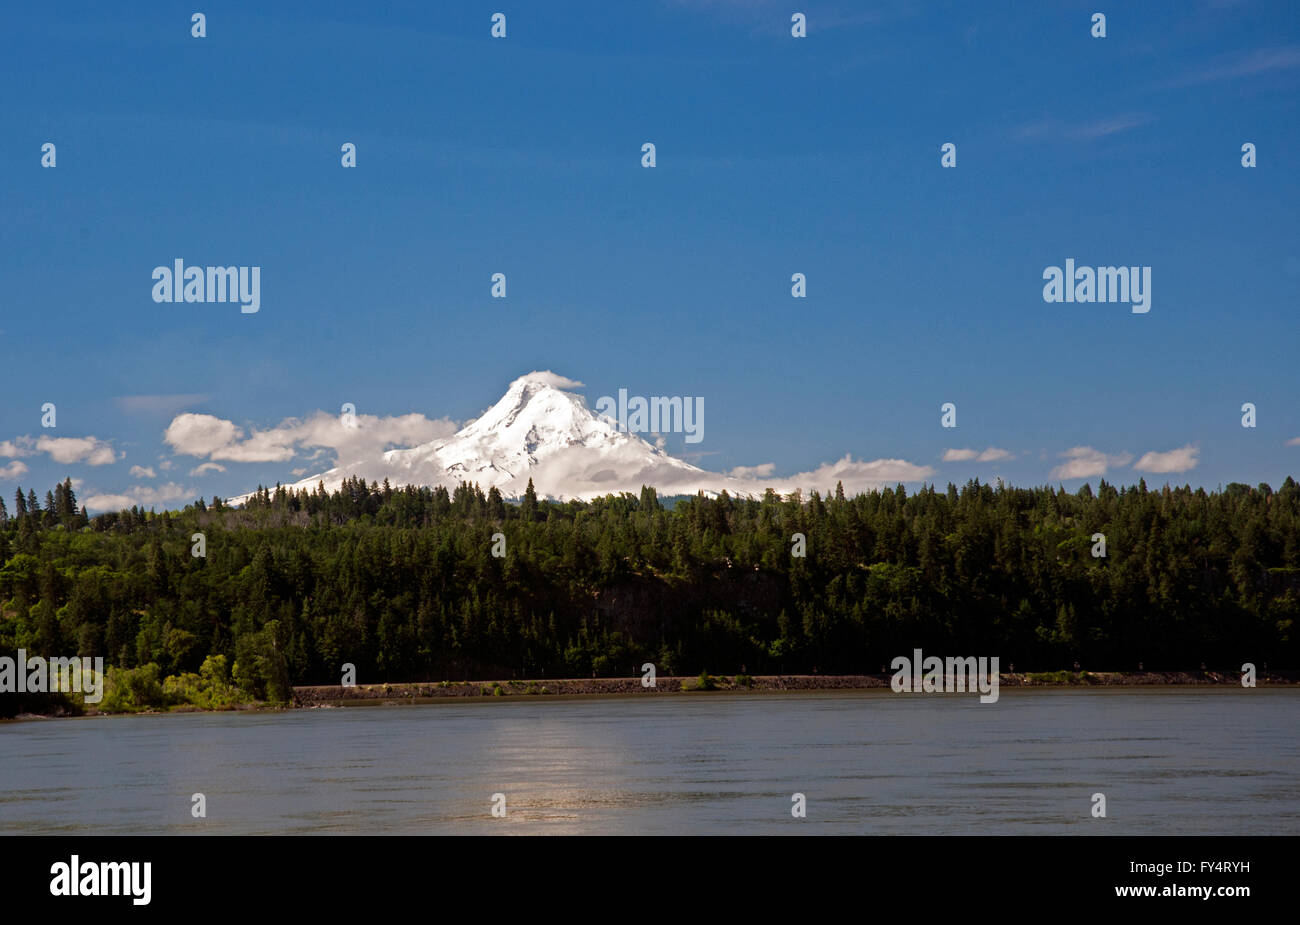 Mount Hood tiré du côté de Washington de la Columbia montre le premier plan. Presque une journée sans nuages avec un peu de nuages Banque D'Images